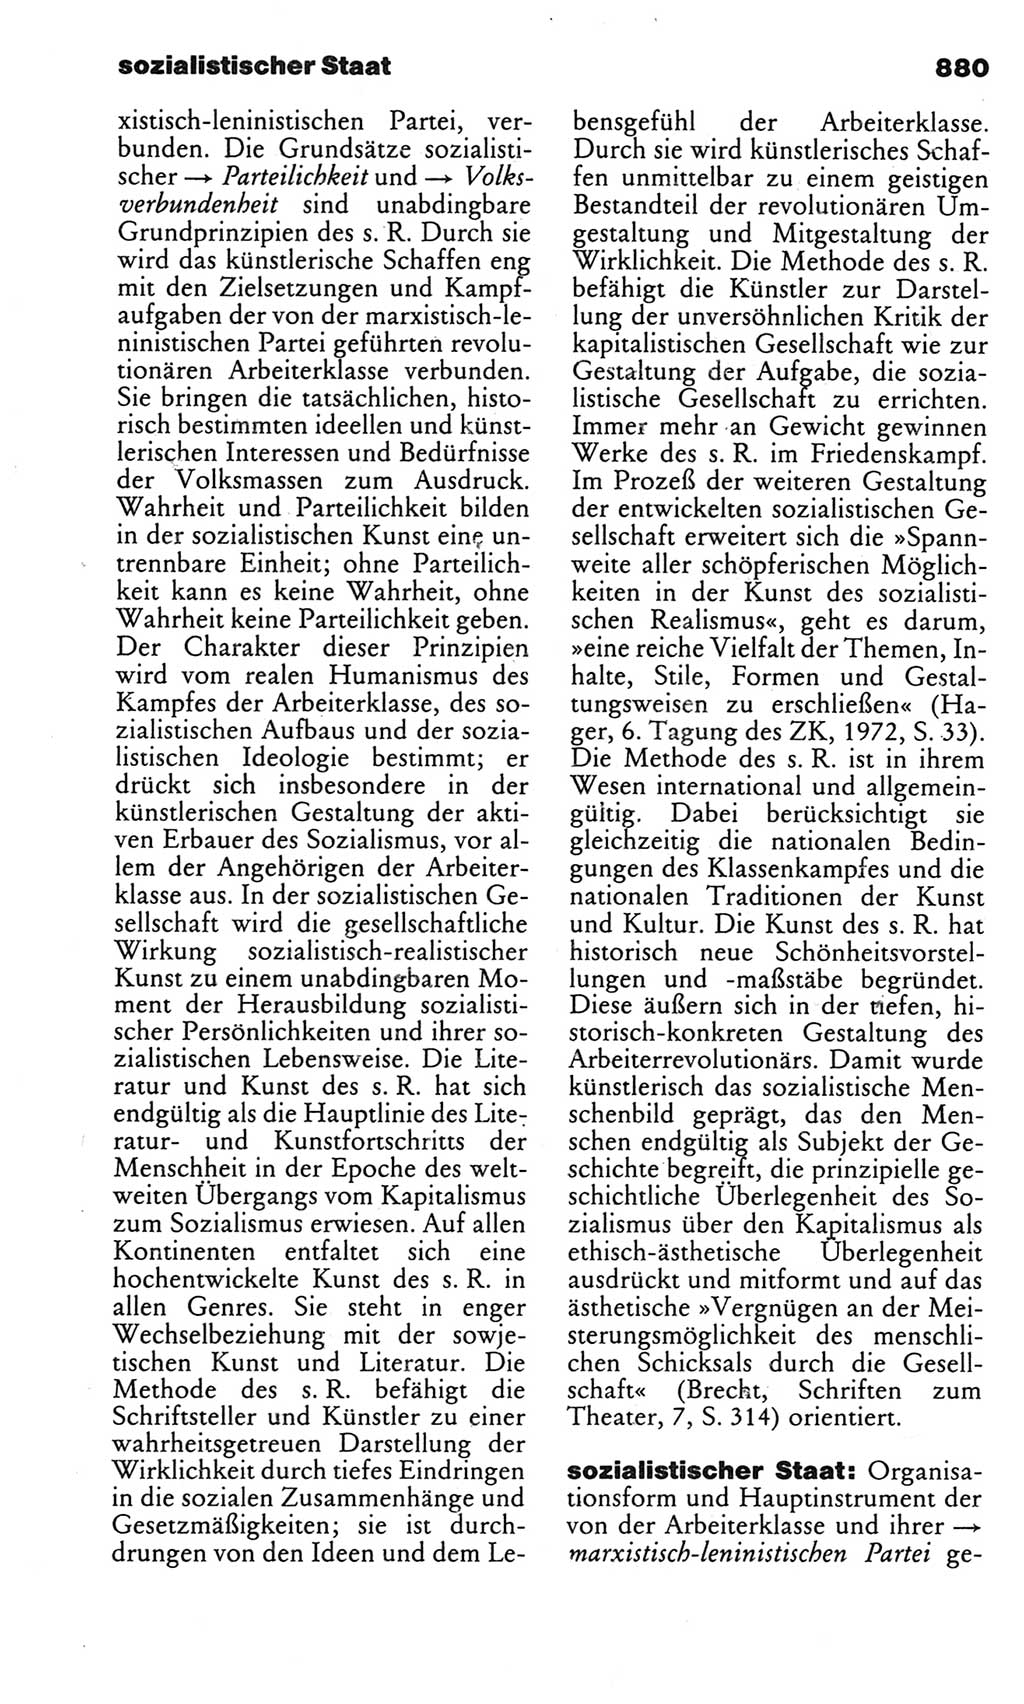 Kleines politisches Wörterbuch [Deutsche Demokratische Republik (DDR)] 1983, Seite 880 (Kl. pol. Wb. DDR 1983, S. 880)